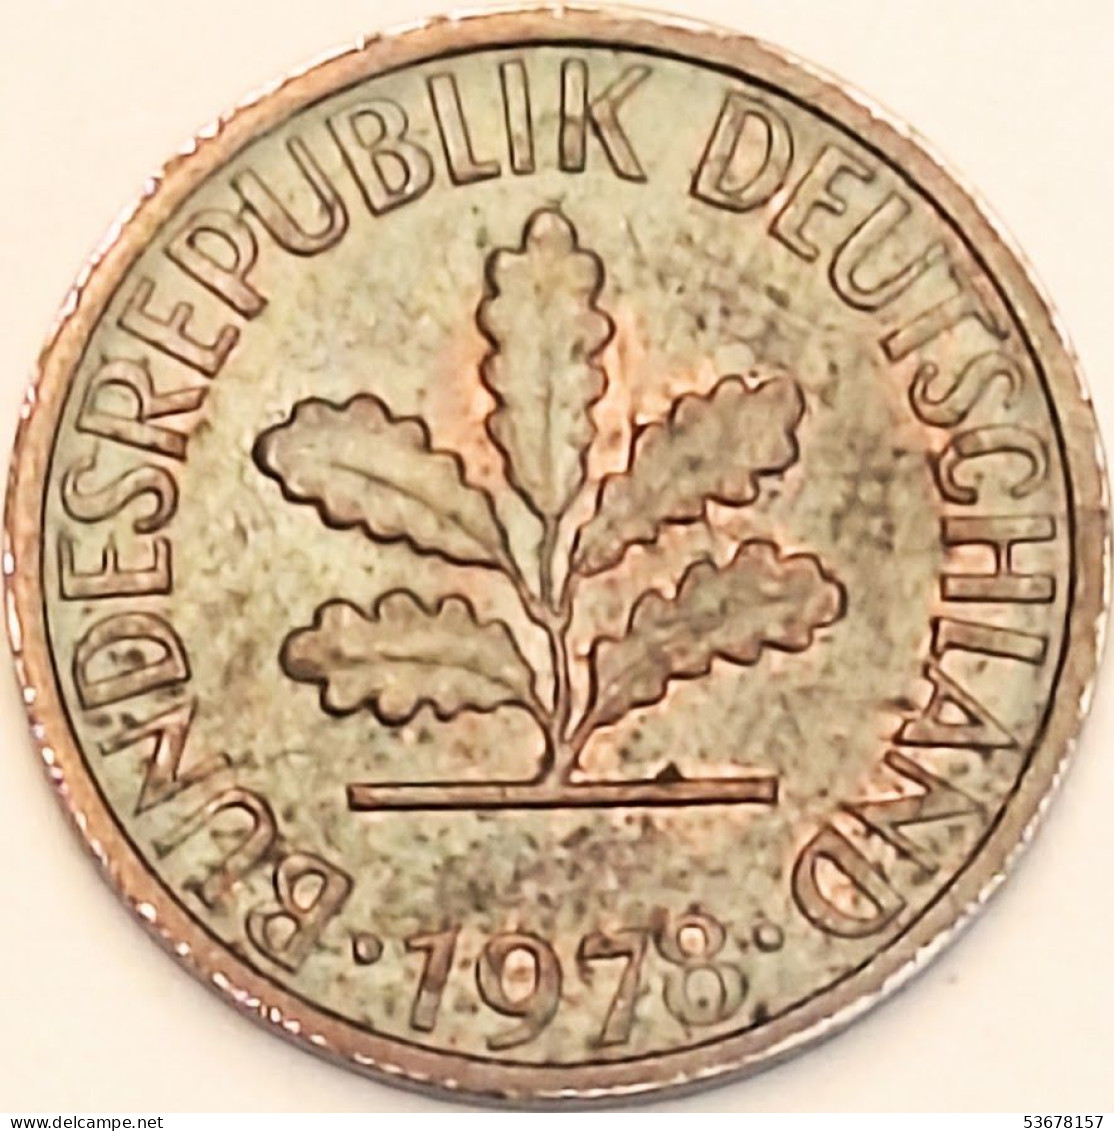 Germany Federal Republic - Pfennig 1978 G, KM# 105 (#4477) - 1 Pfennig